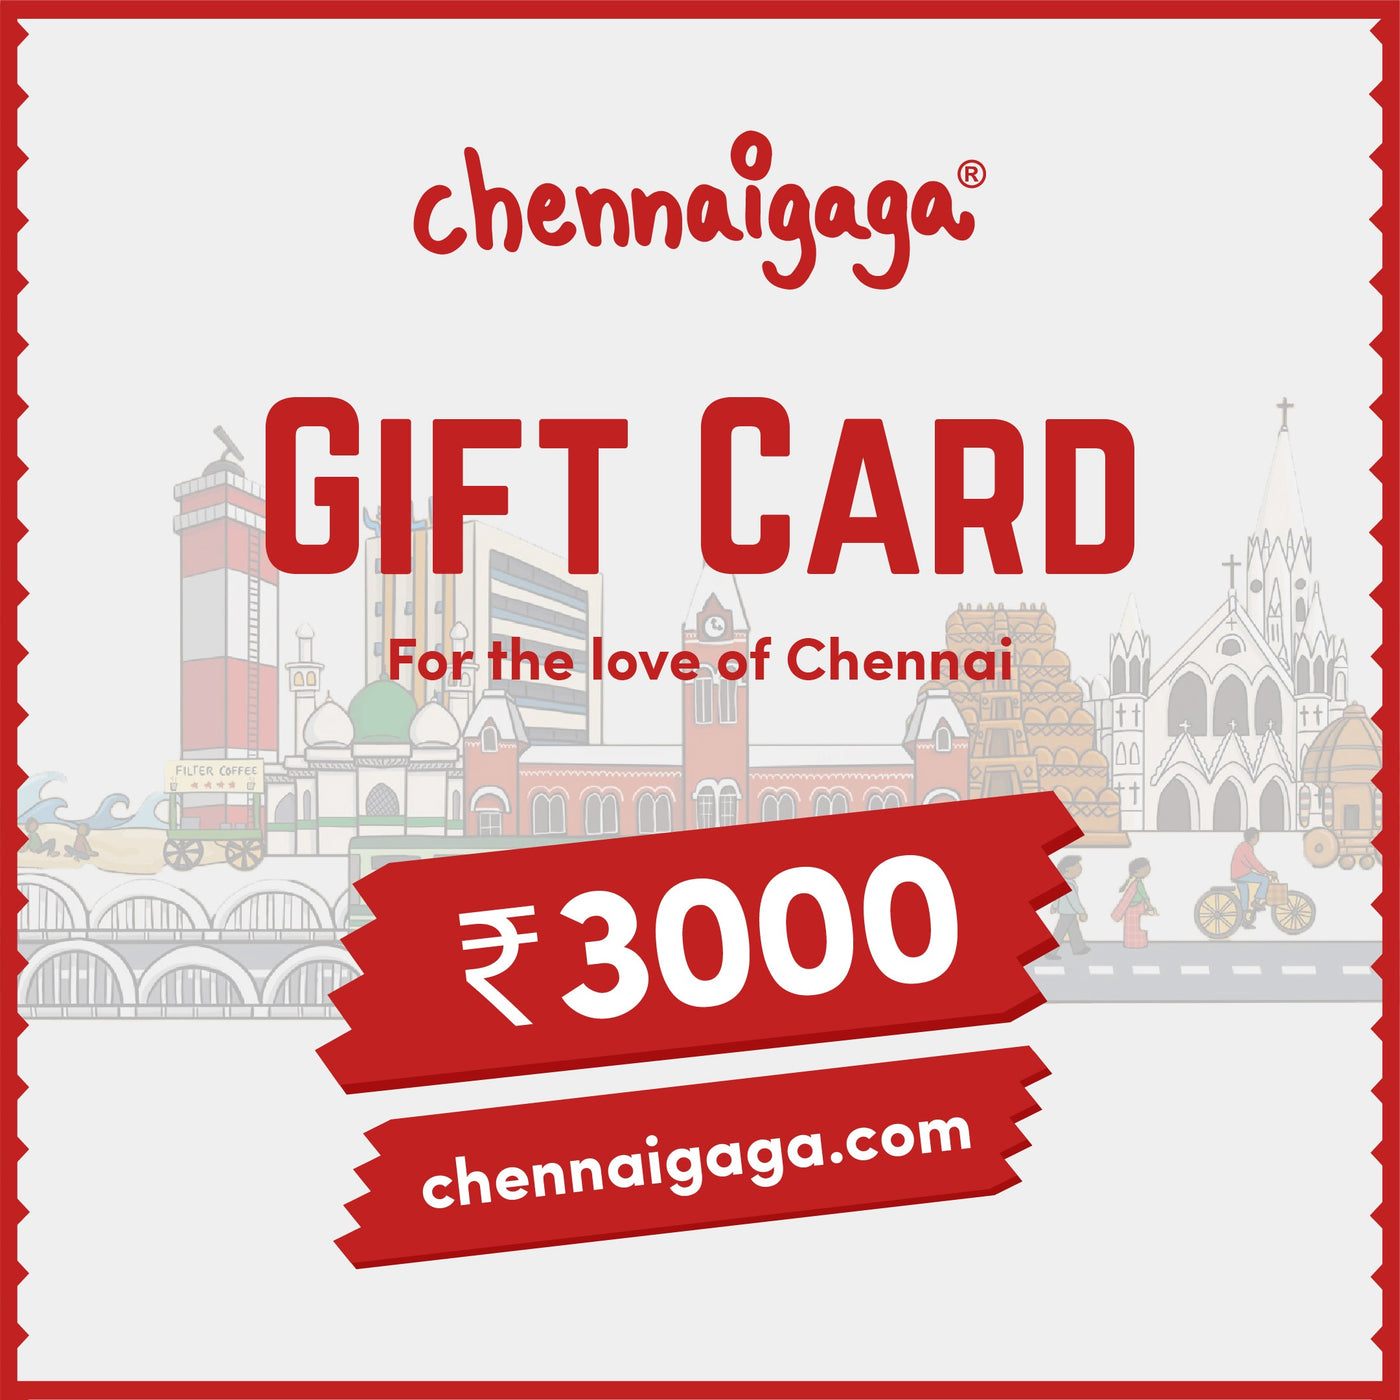 Chennaigaga Gift Card